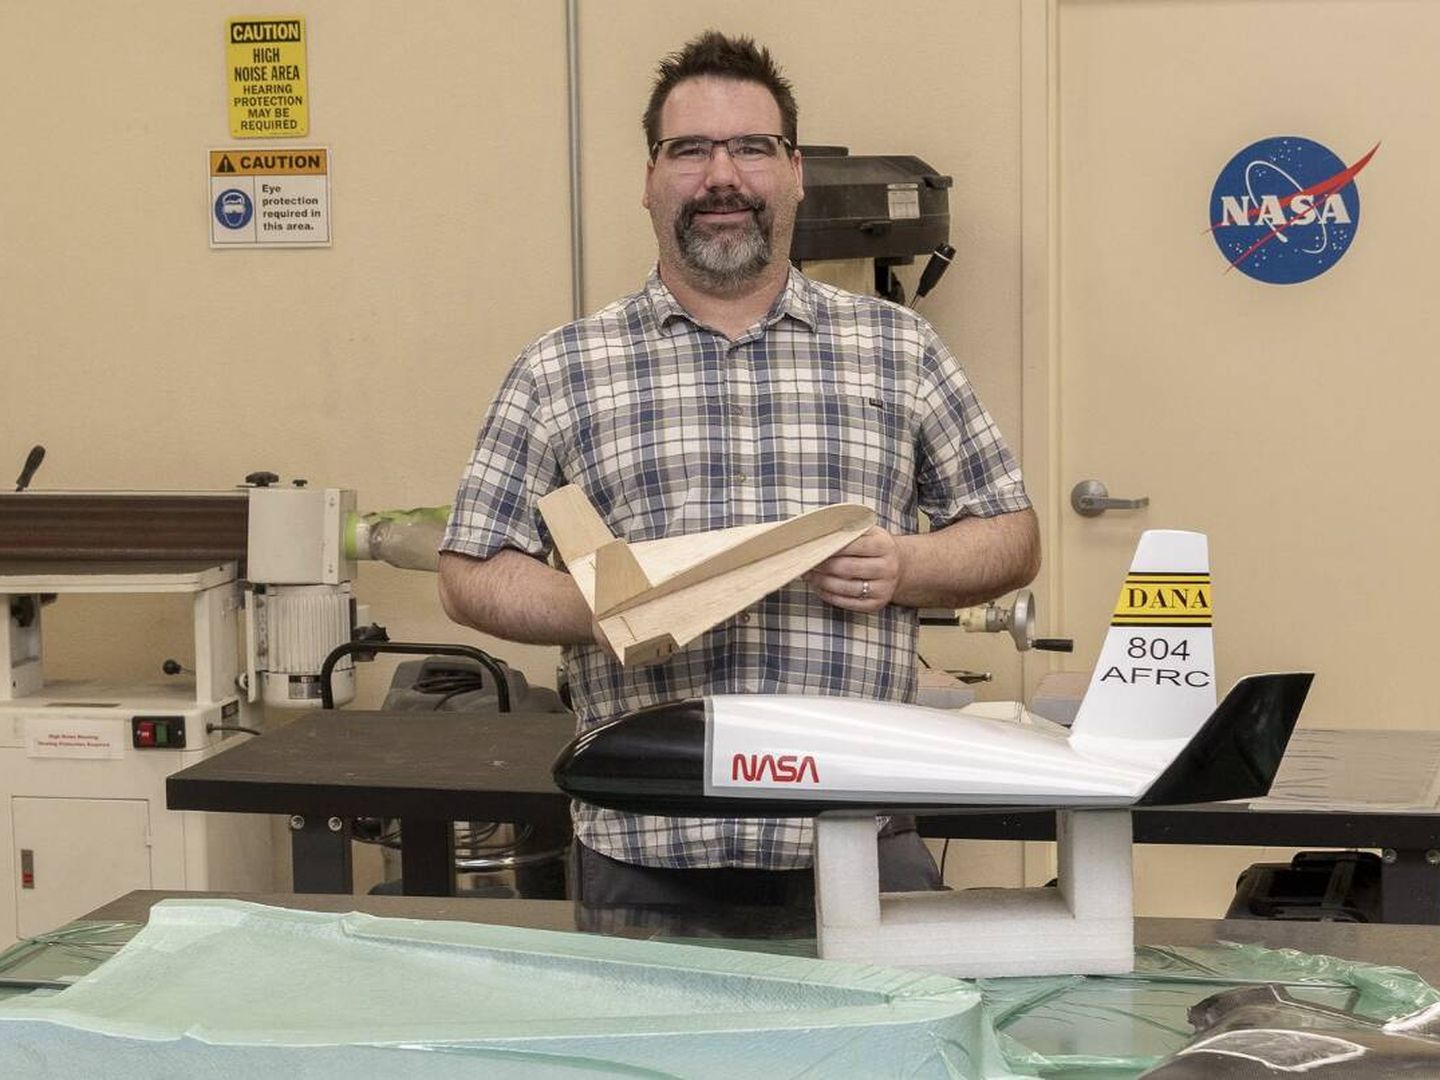 John Bodylski posa con el prototipo de avión sonda (NASA/Steve Freeman)